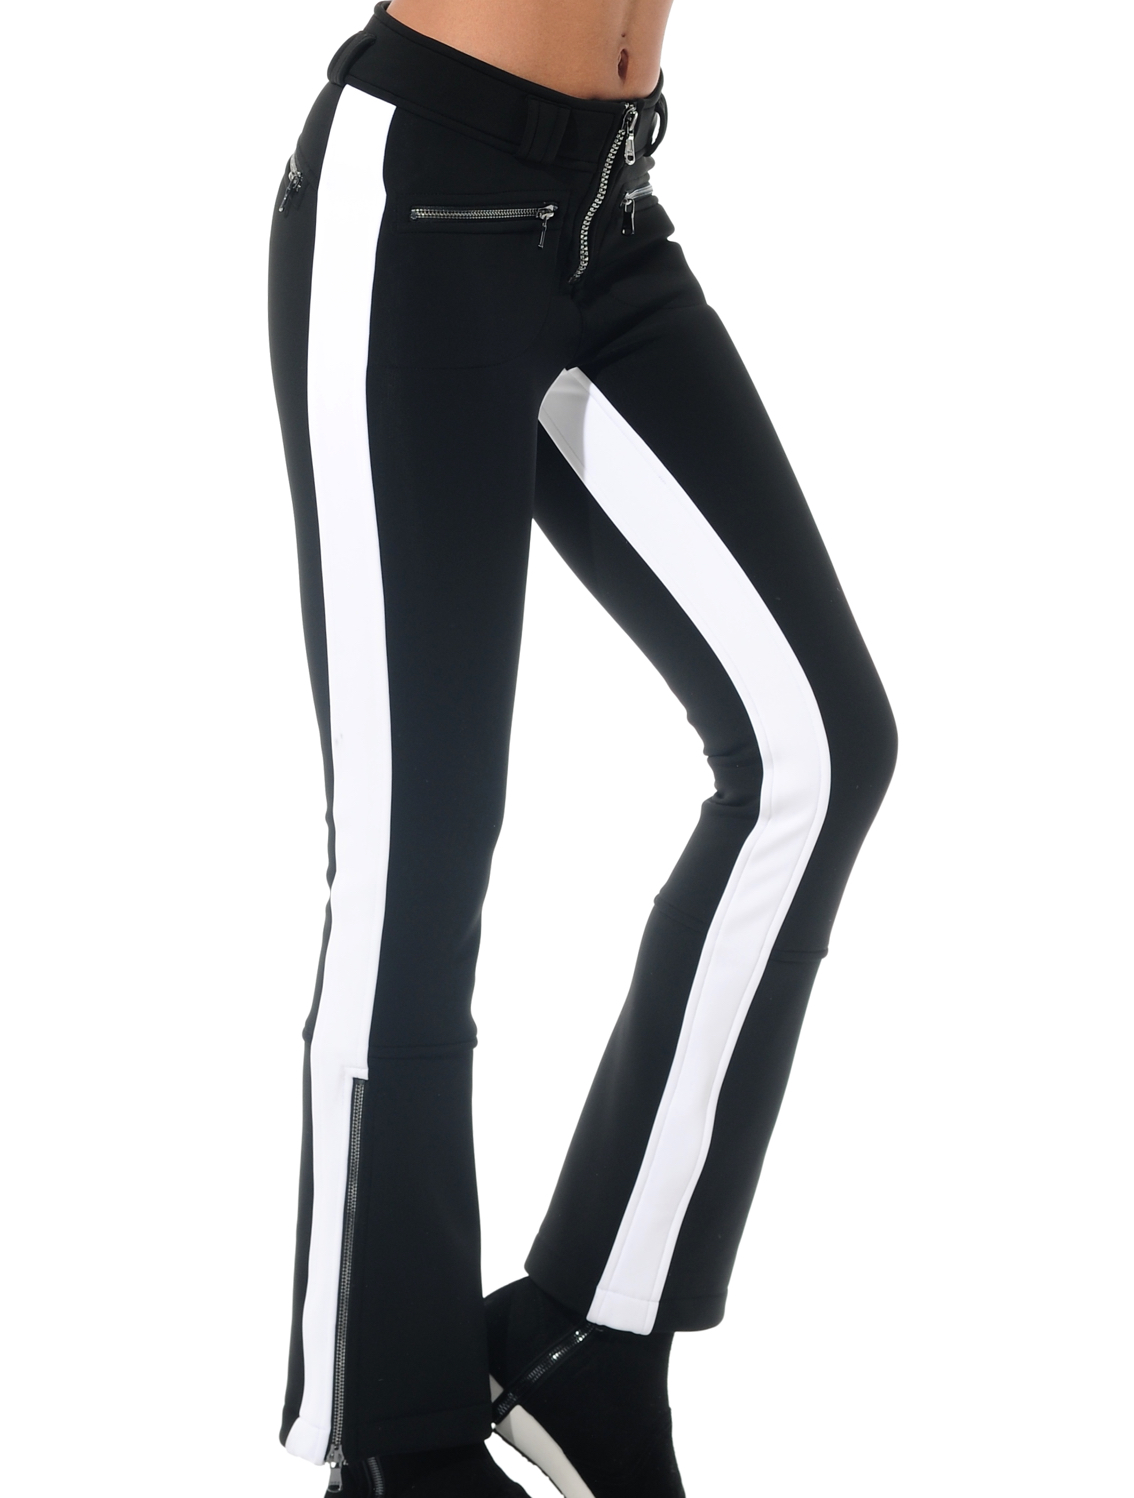 4way stretch jet pants black/white 